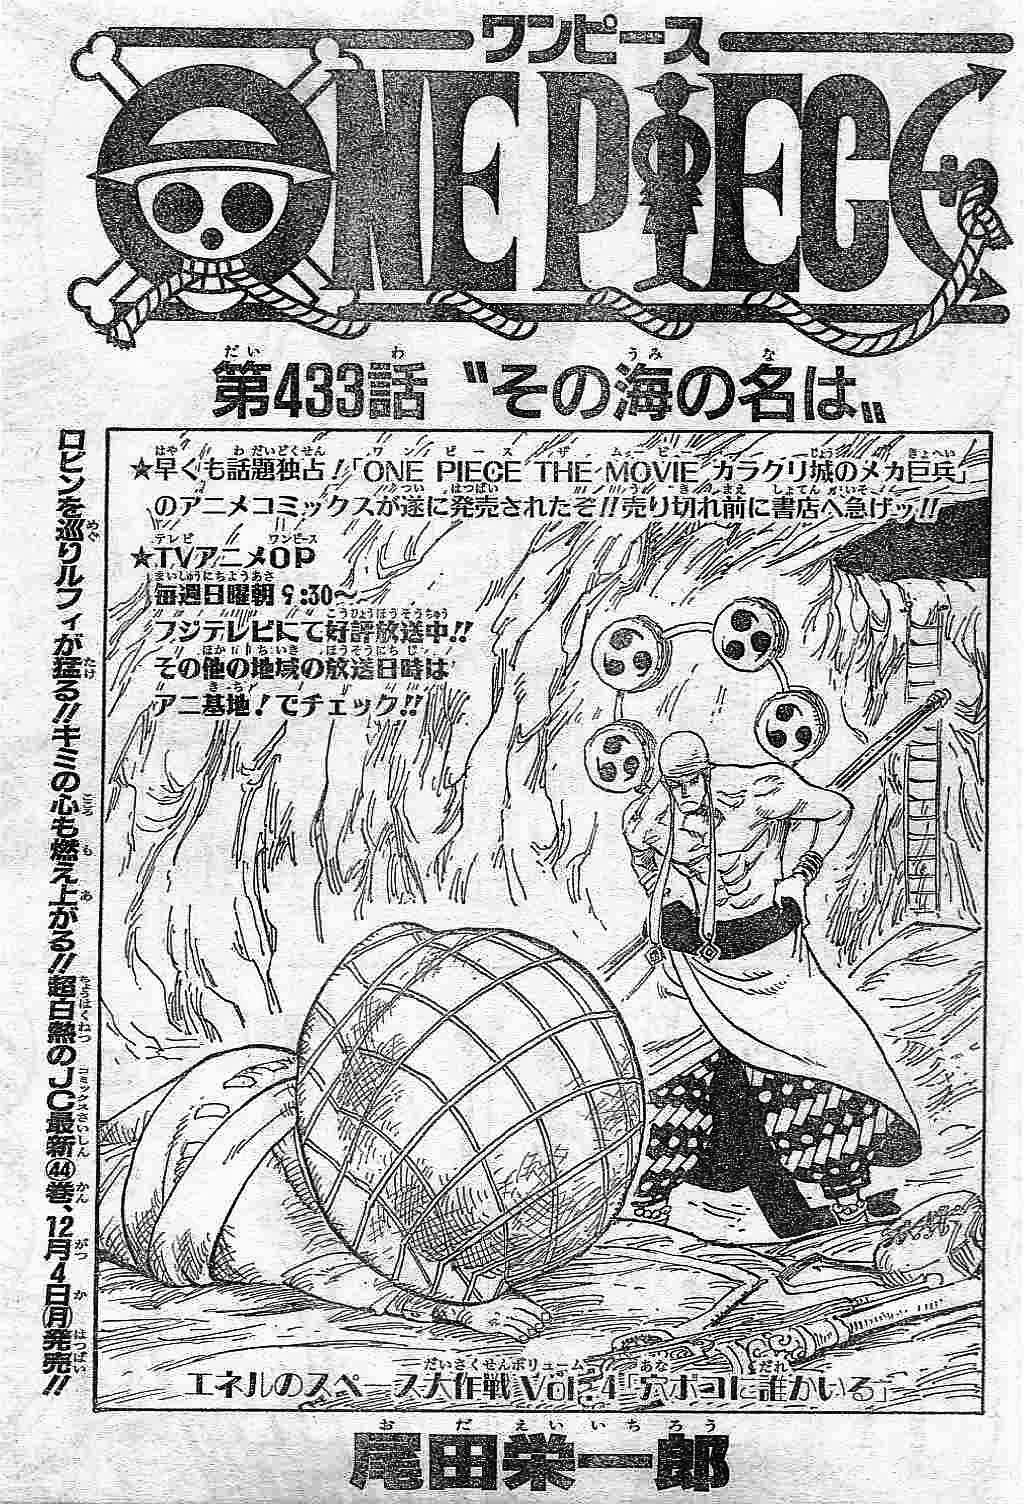 One Piece 433話 その海の名は 鷹のマンガ日記 ジャンプネタバレ